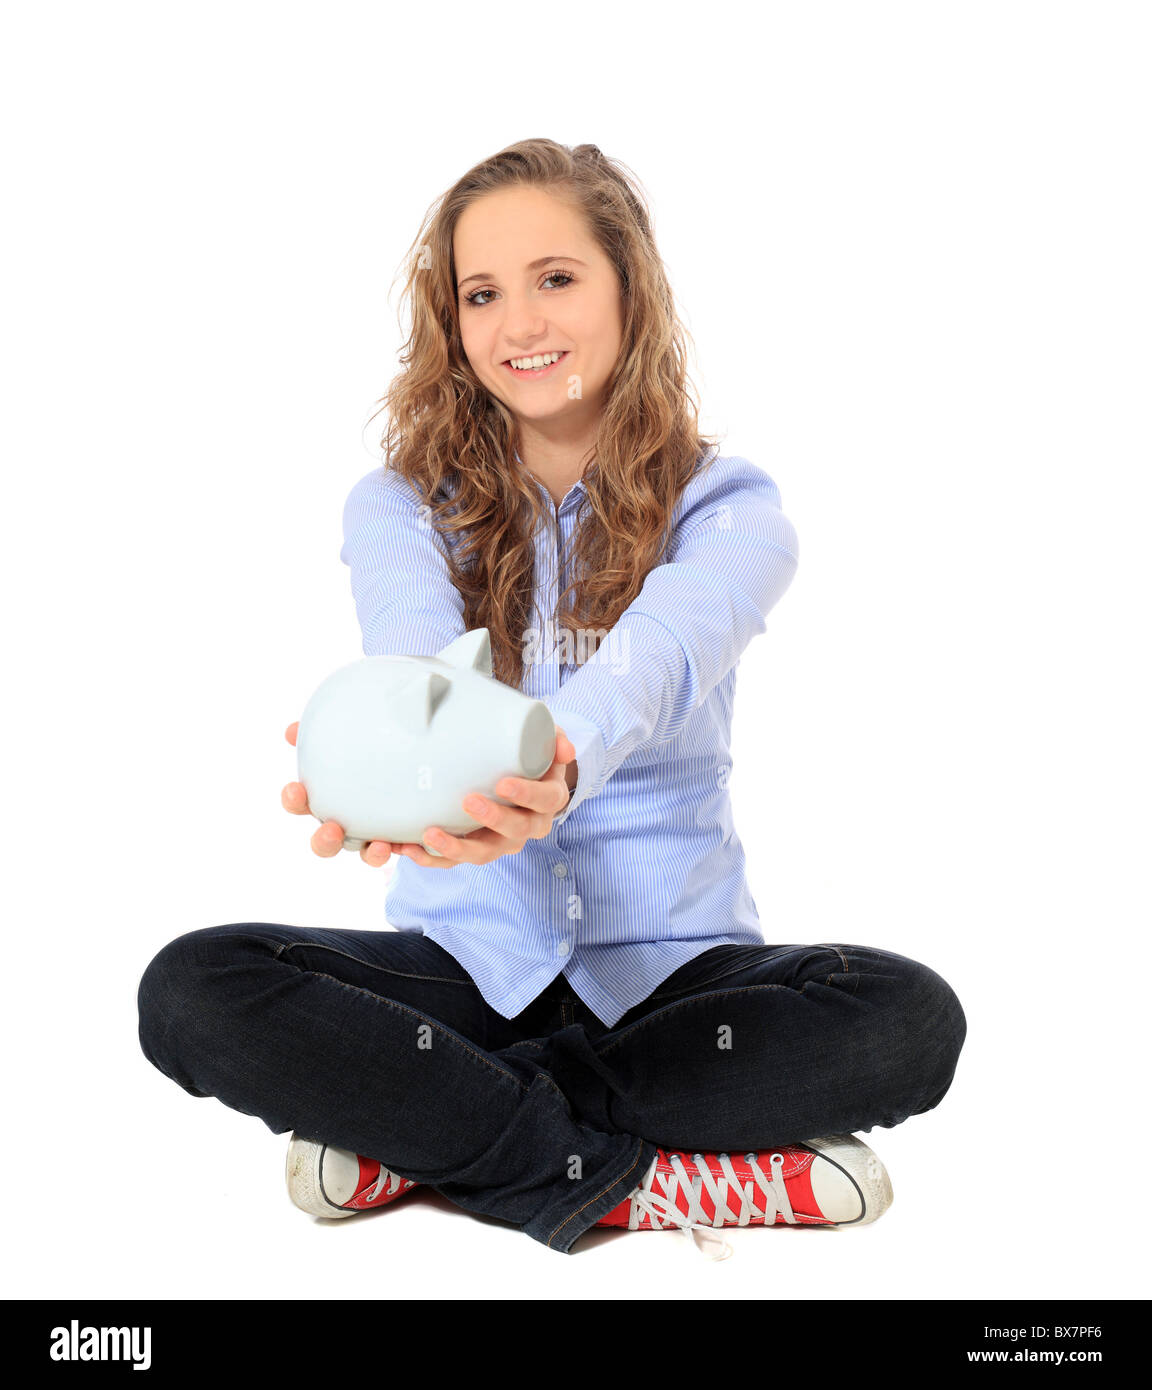 Young Girl holding piggy bank. Le tout sur fond blanc. Banque D'Images